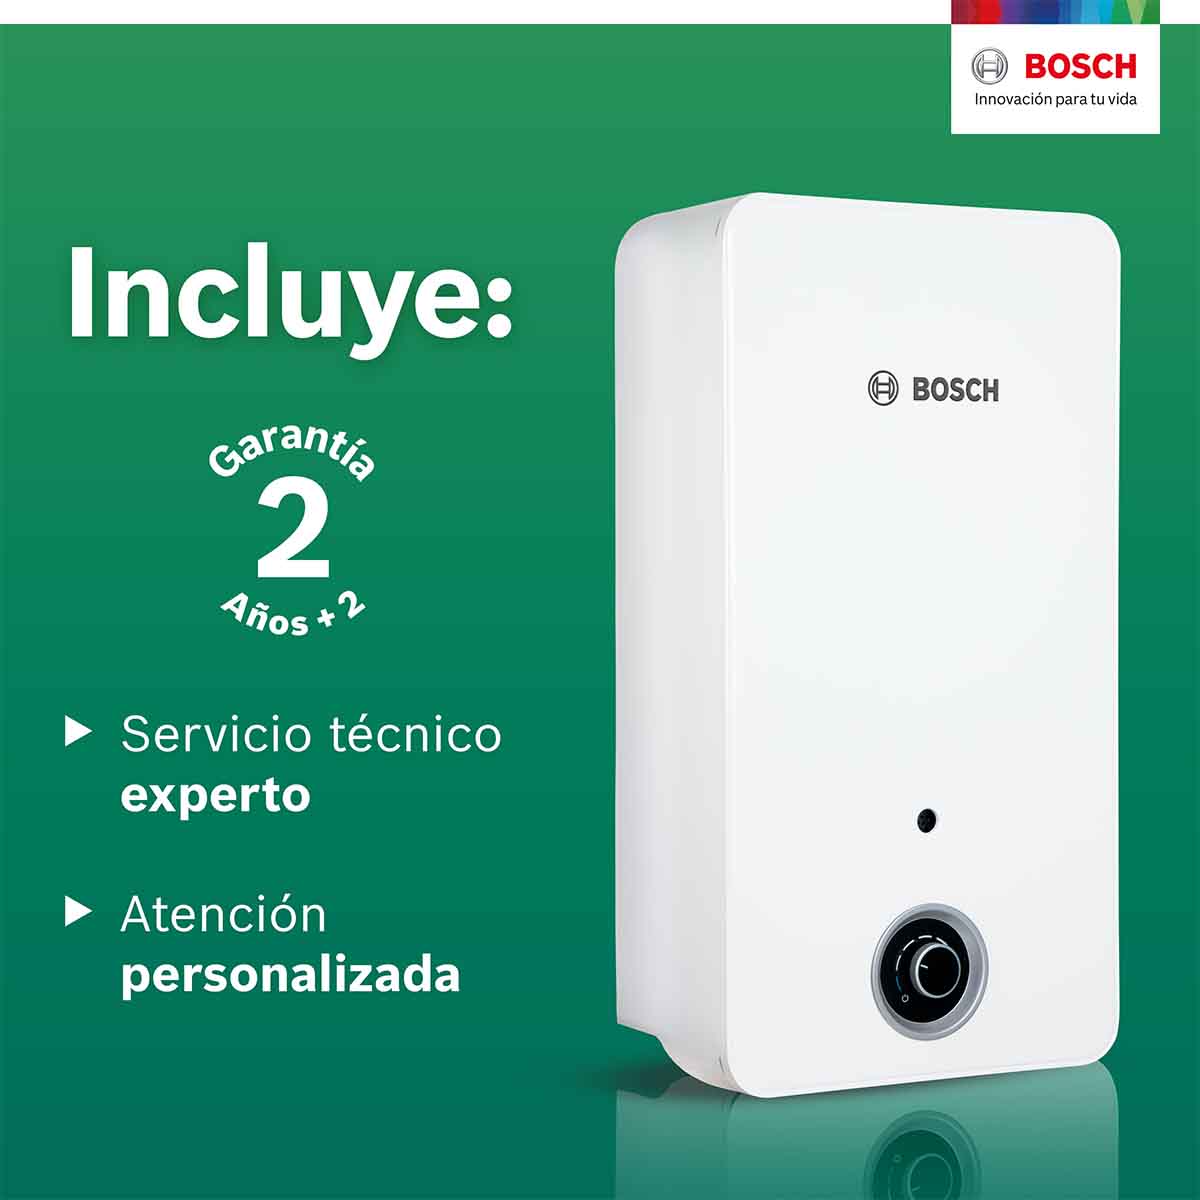 Calentador De Paso 2 Servicios Balanz 13 Gas Natural Bosch